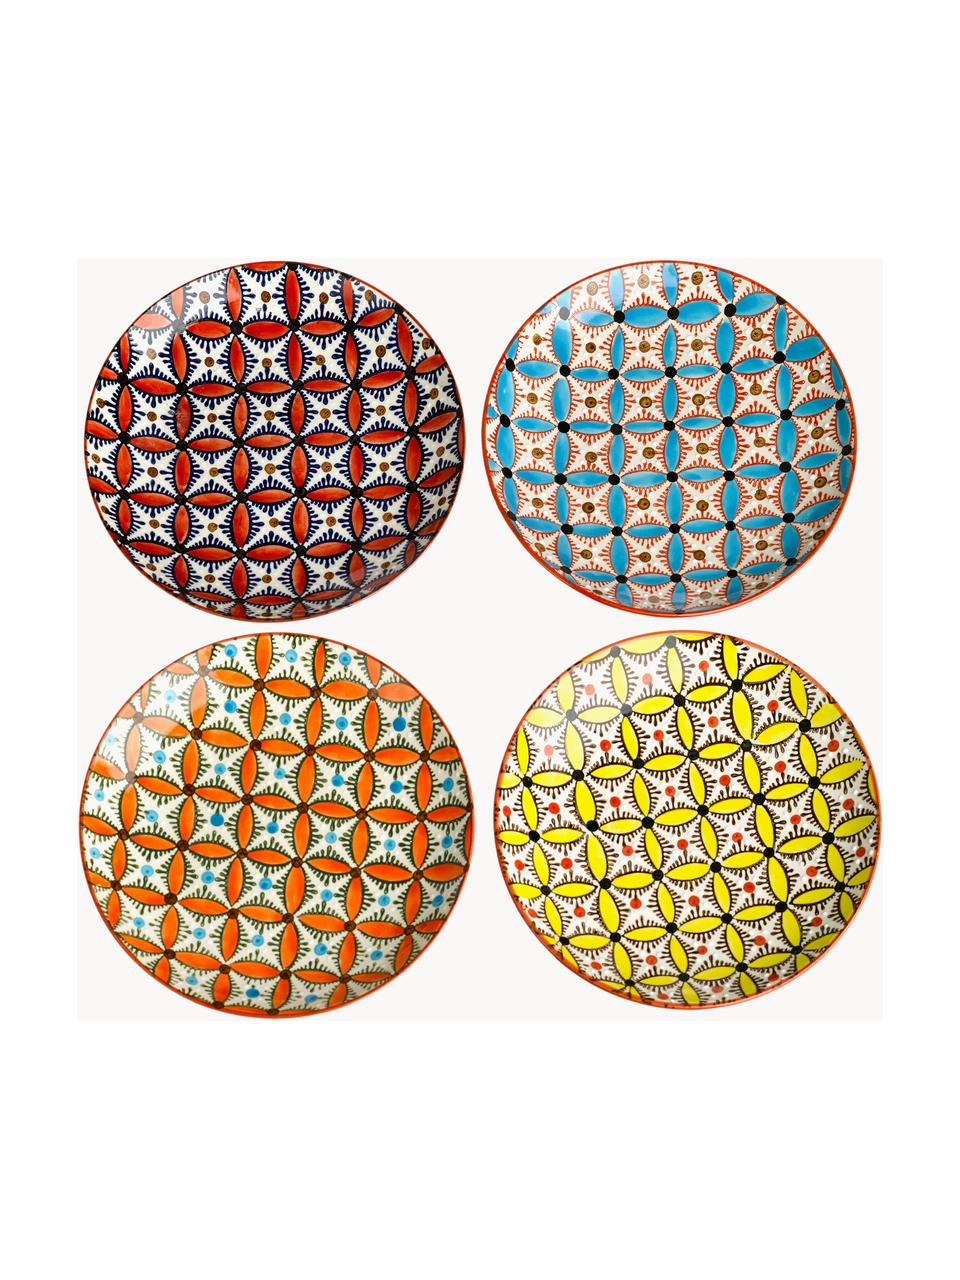 Súprava raňajkových tanierov Hippy, 4 ks, Keramika, Žltá, terakotová, oranžová, svetlomodrá, Ø 20 cm